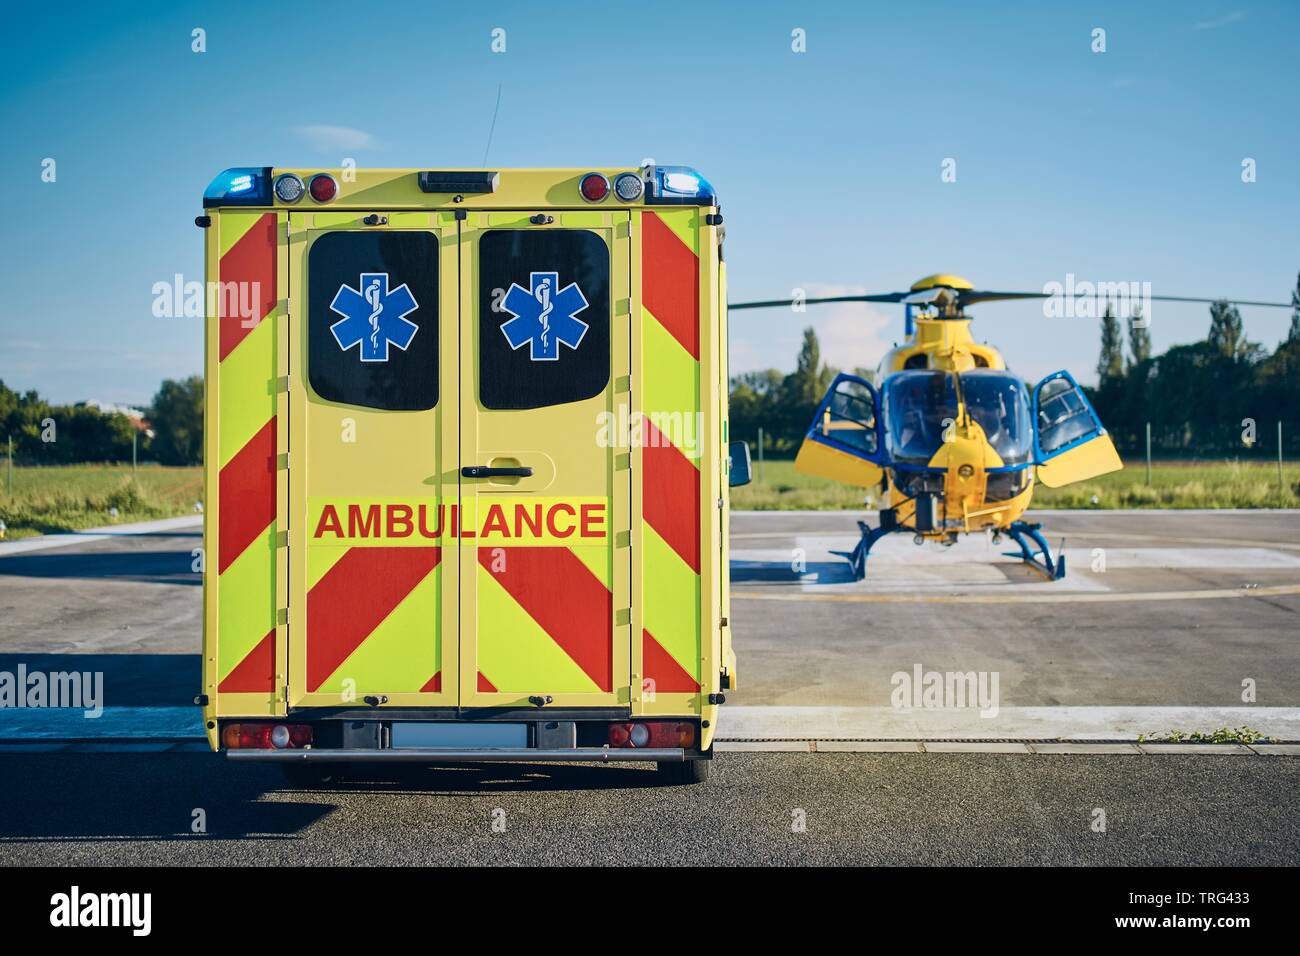 Ambulanza contro elicottero del servizio di emergenza medica. Temi di salvataggio, aiuto e speranza. Foto Stock